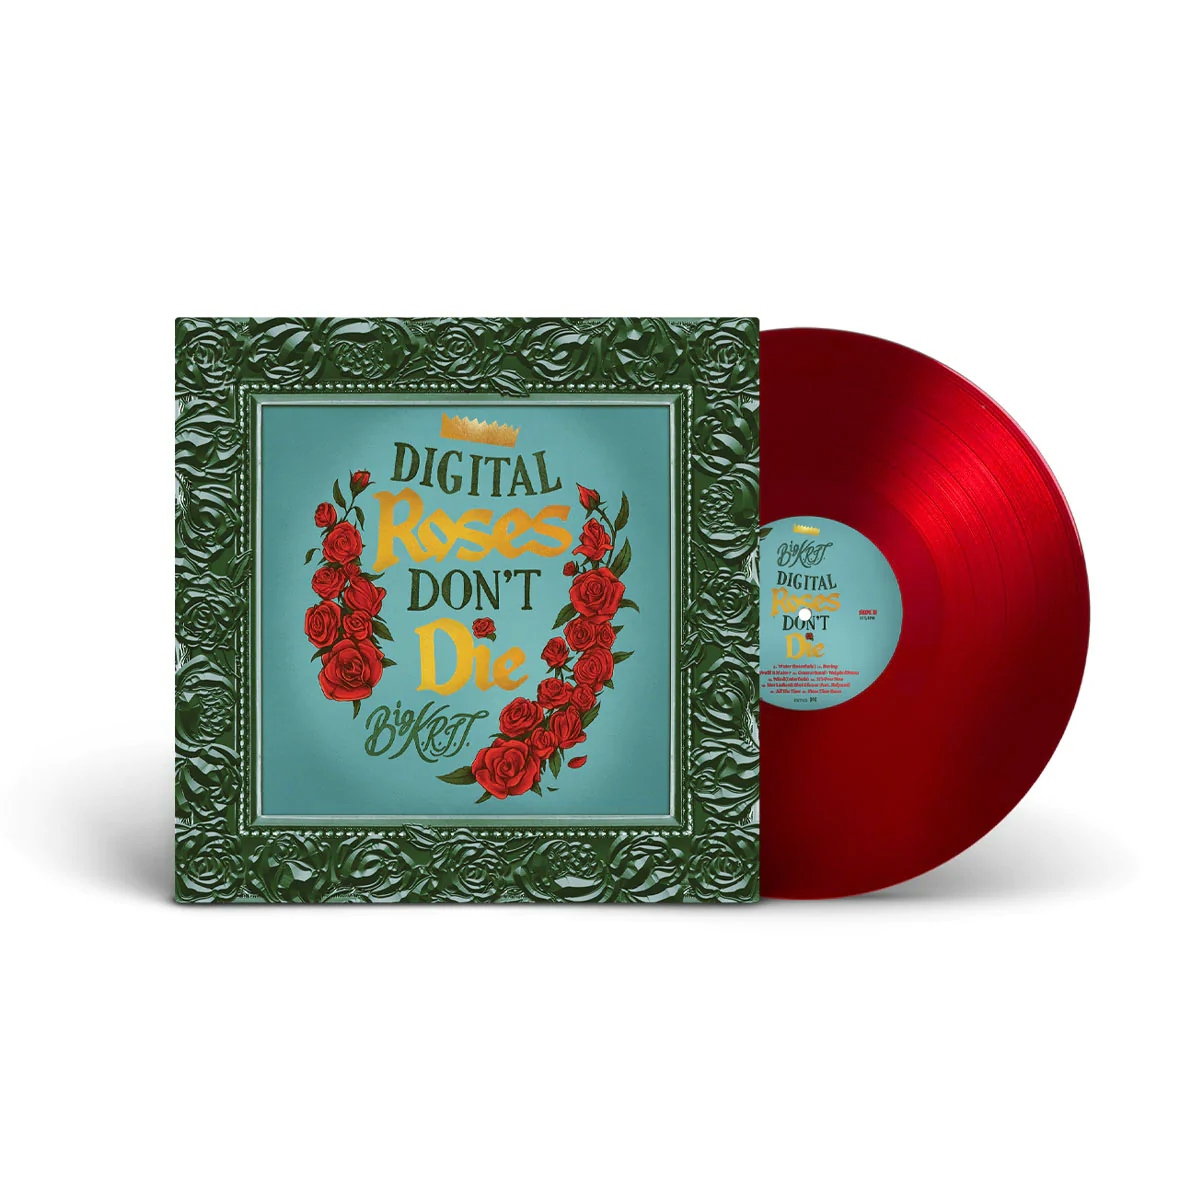 Album artwork for Album artwork for Digital Roses Don't Die by Big K.R.I.T. by Digital Roses Don't Die - Big K.R.I.T.